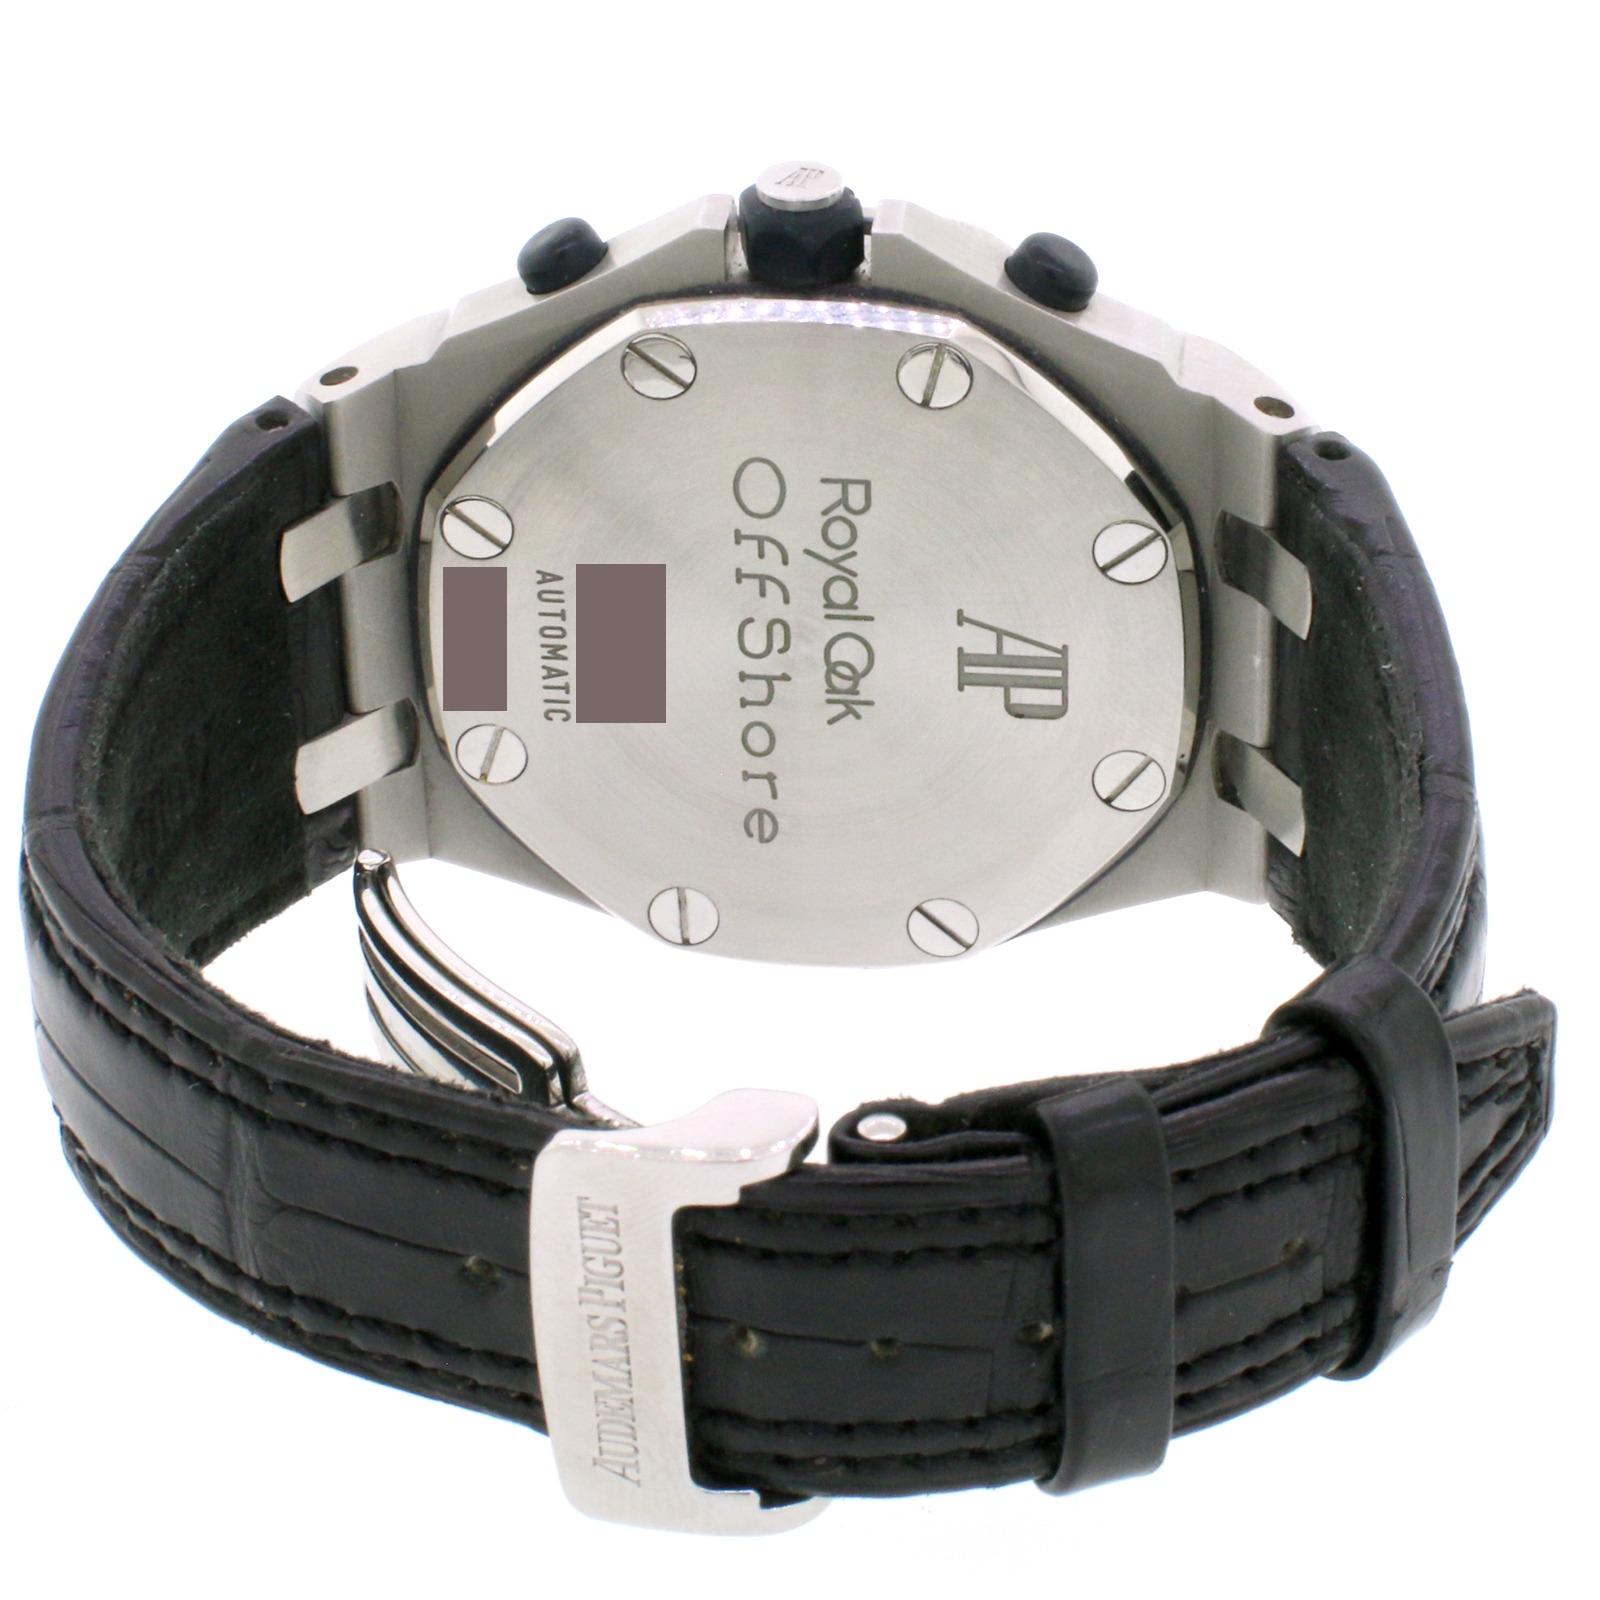 Audemars Piguet Royal Oak Offshore Chronograph Steel Watch For Sale 1